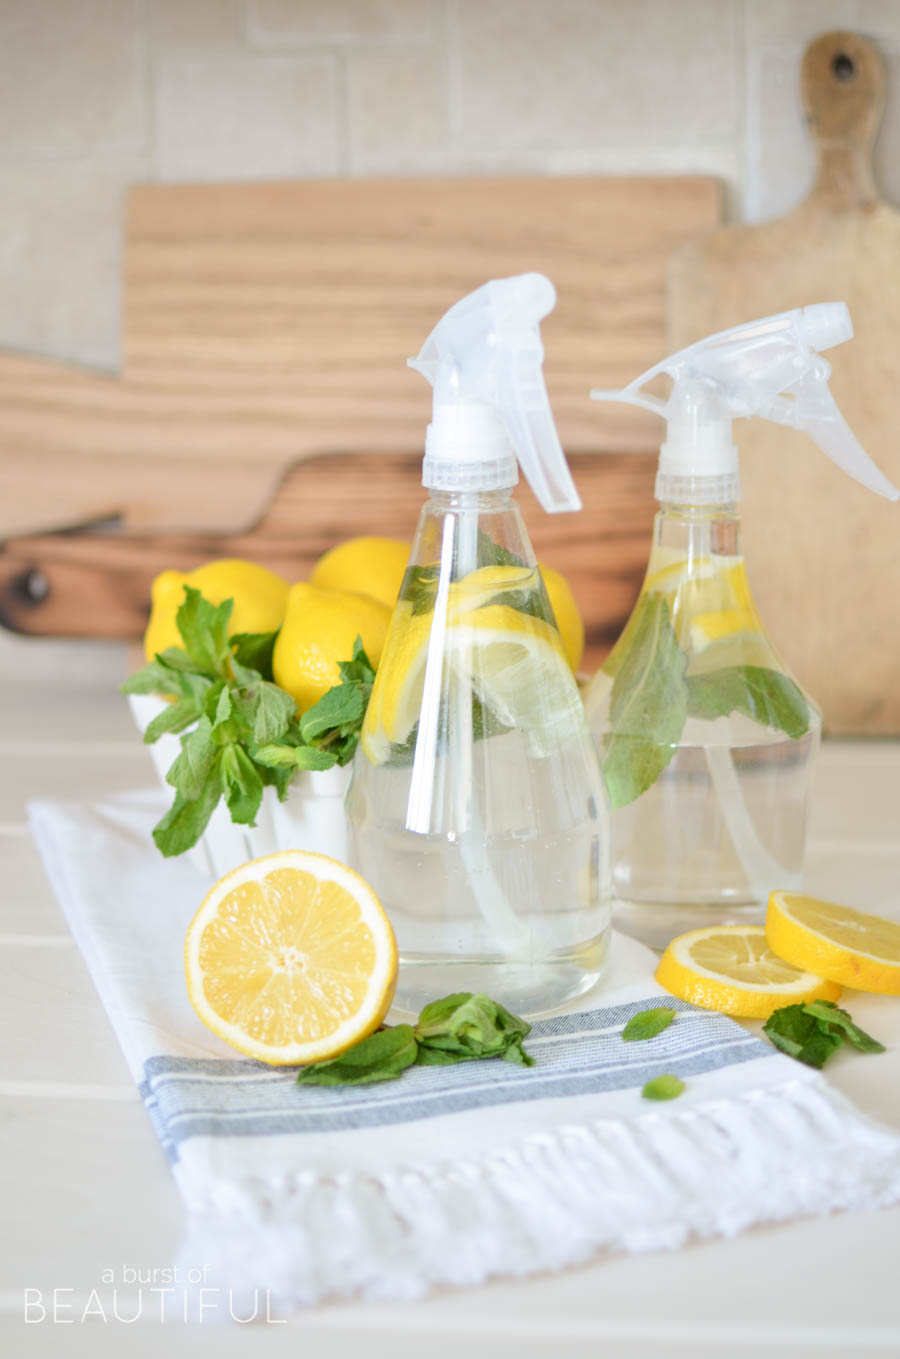 Долой химикаты: Натуральные средства для уборки дома